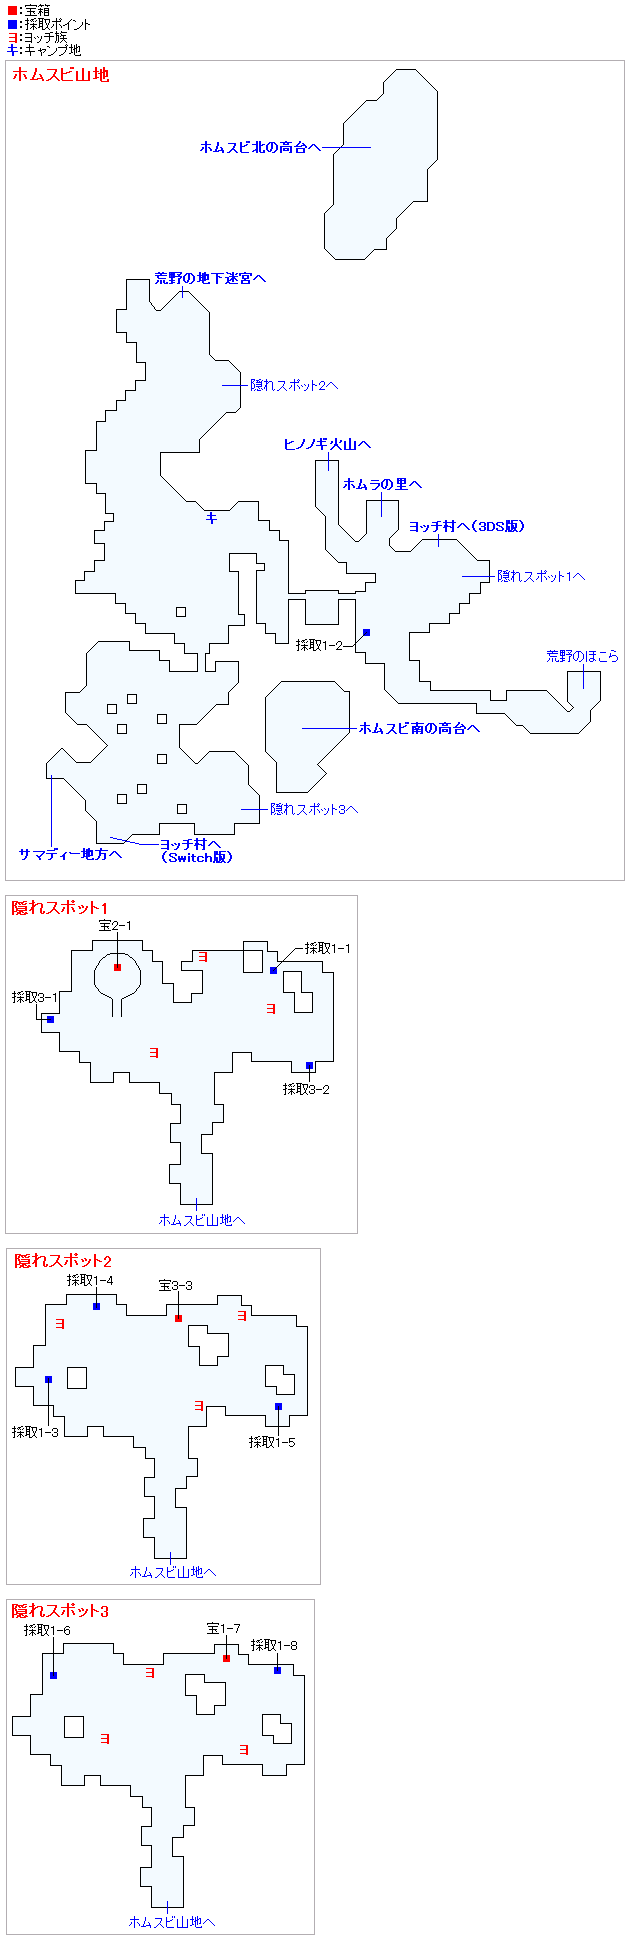 ドラクエ11s ドラクエ11 ホムスビ山地のマップデータ